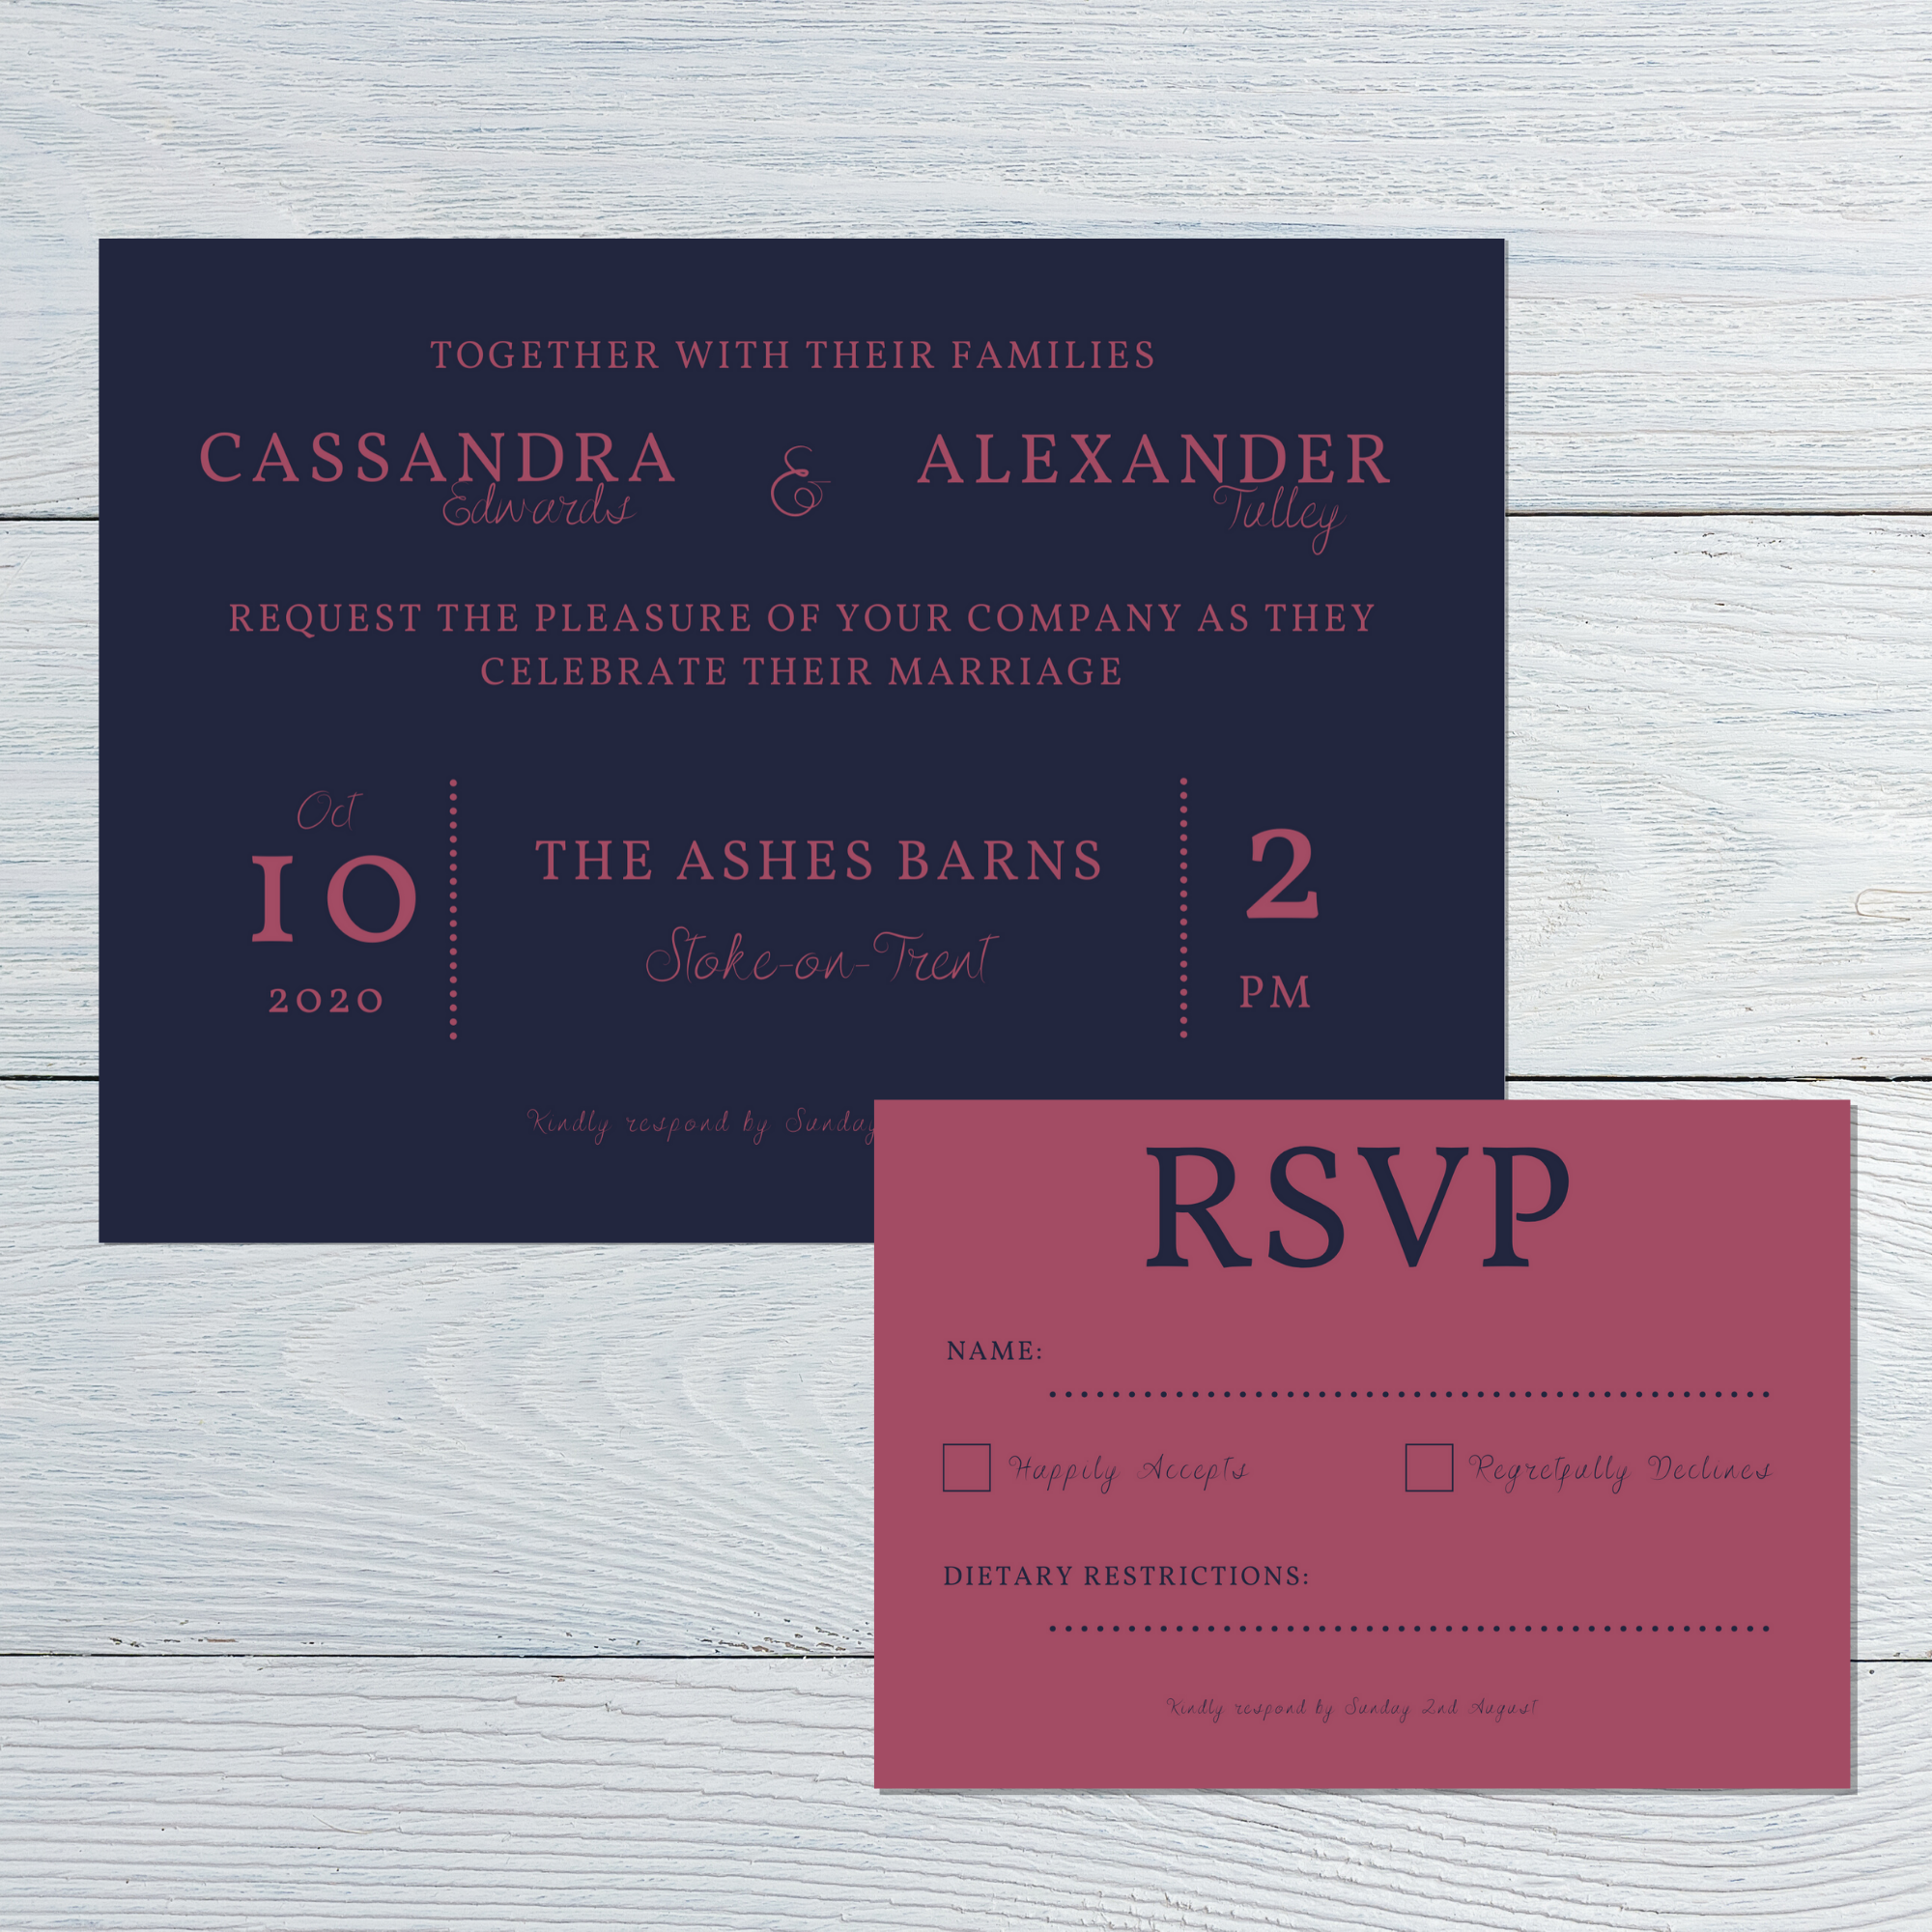 Minimalist wedding invitation and RSVP